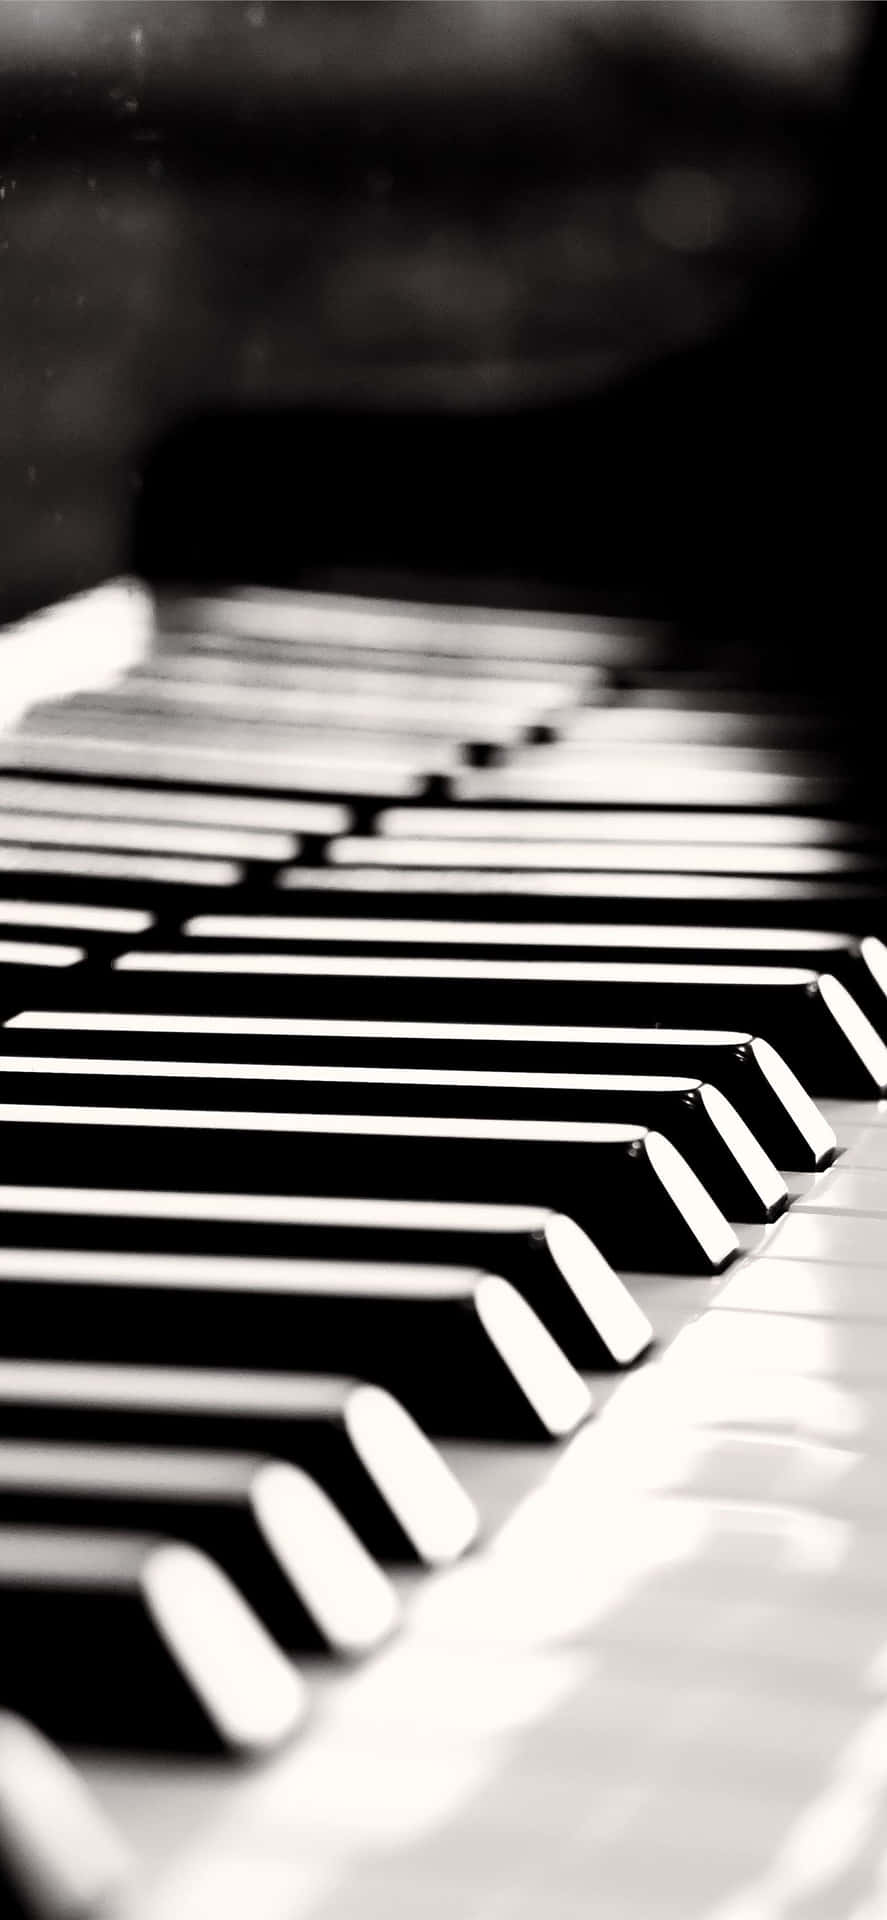 Imagenen Blanco Y Negro De Un Piano, Instrumento Musical.